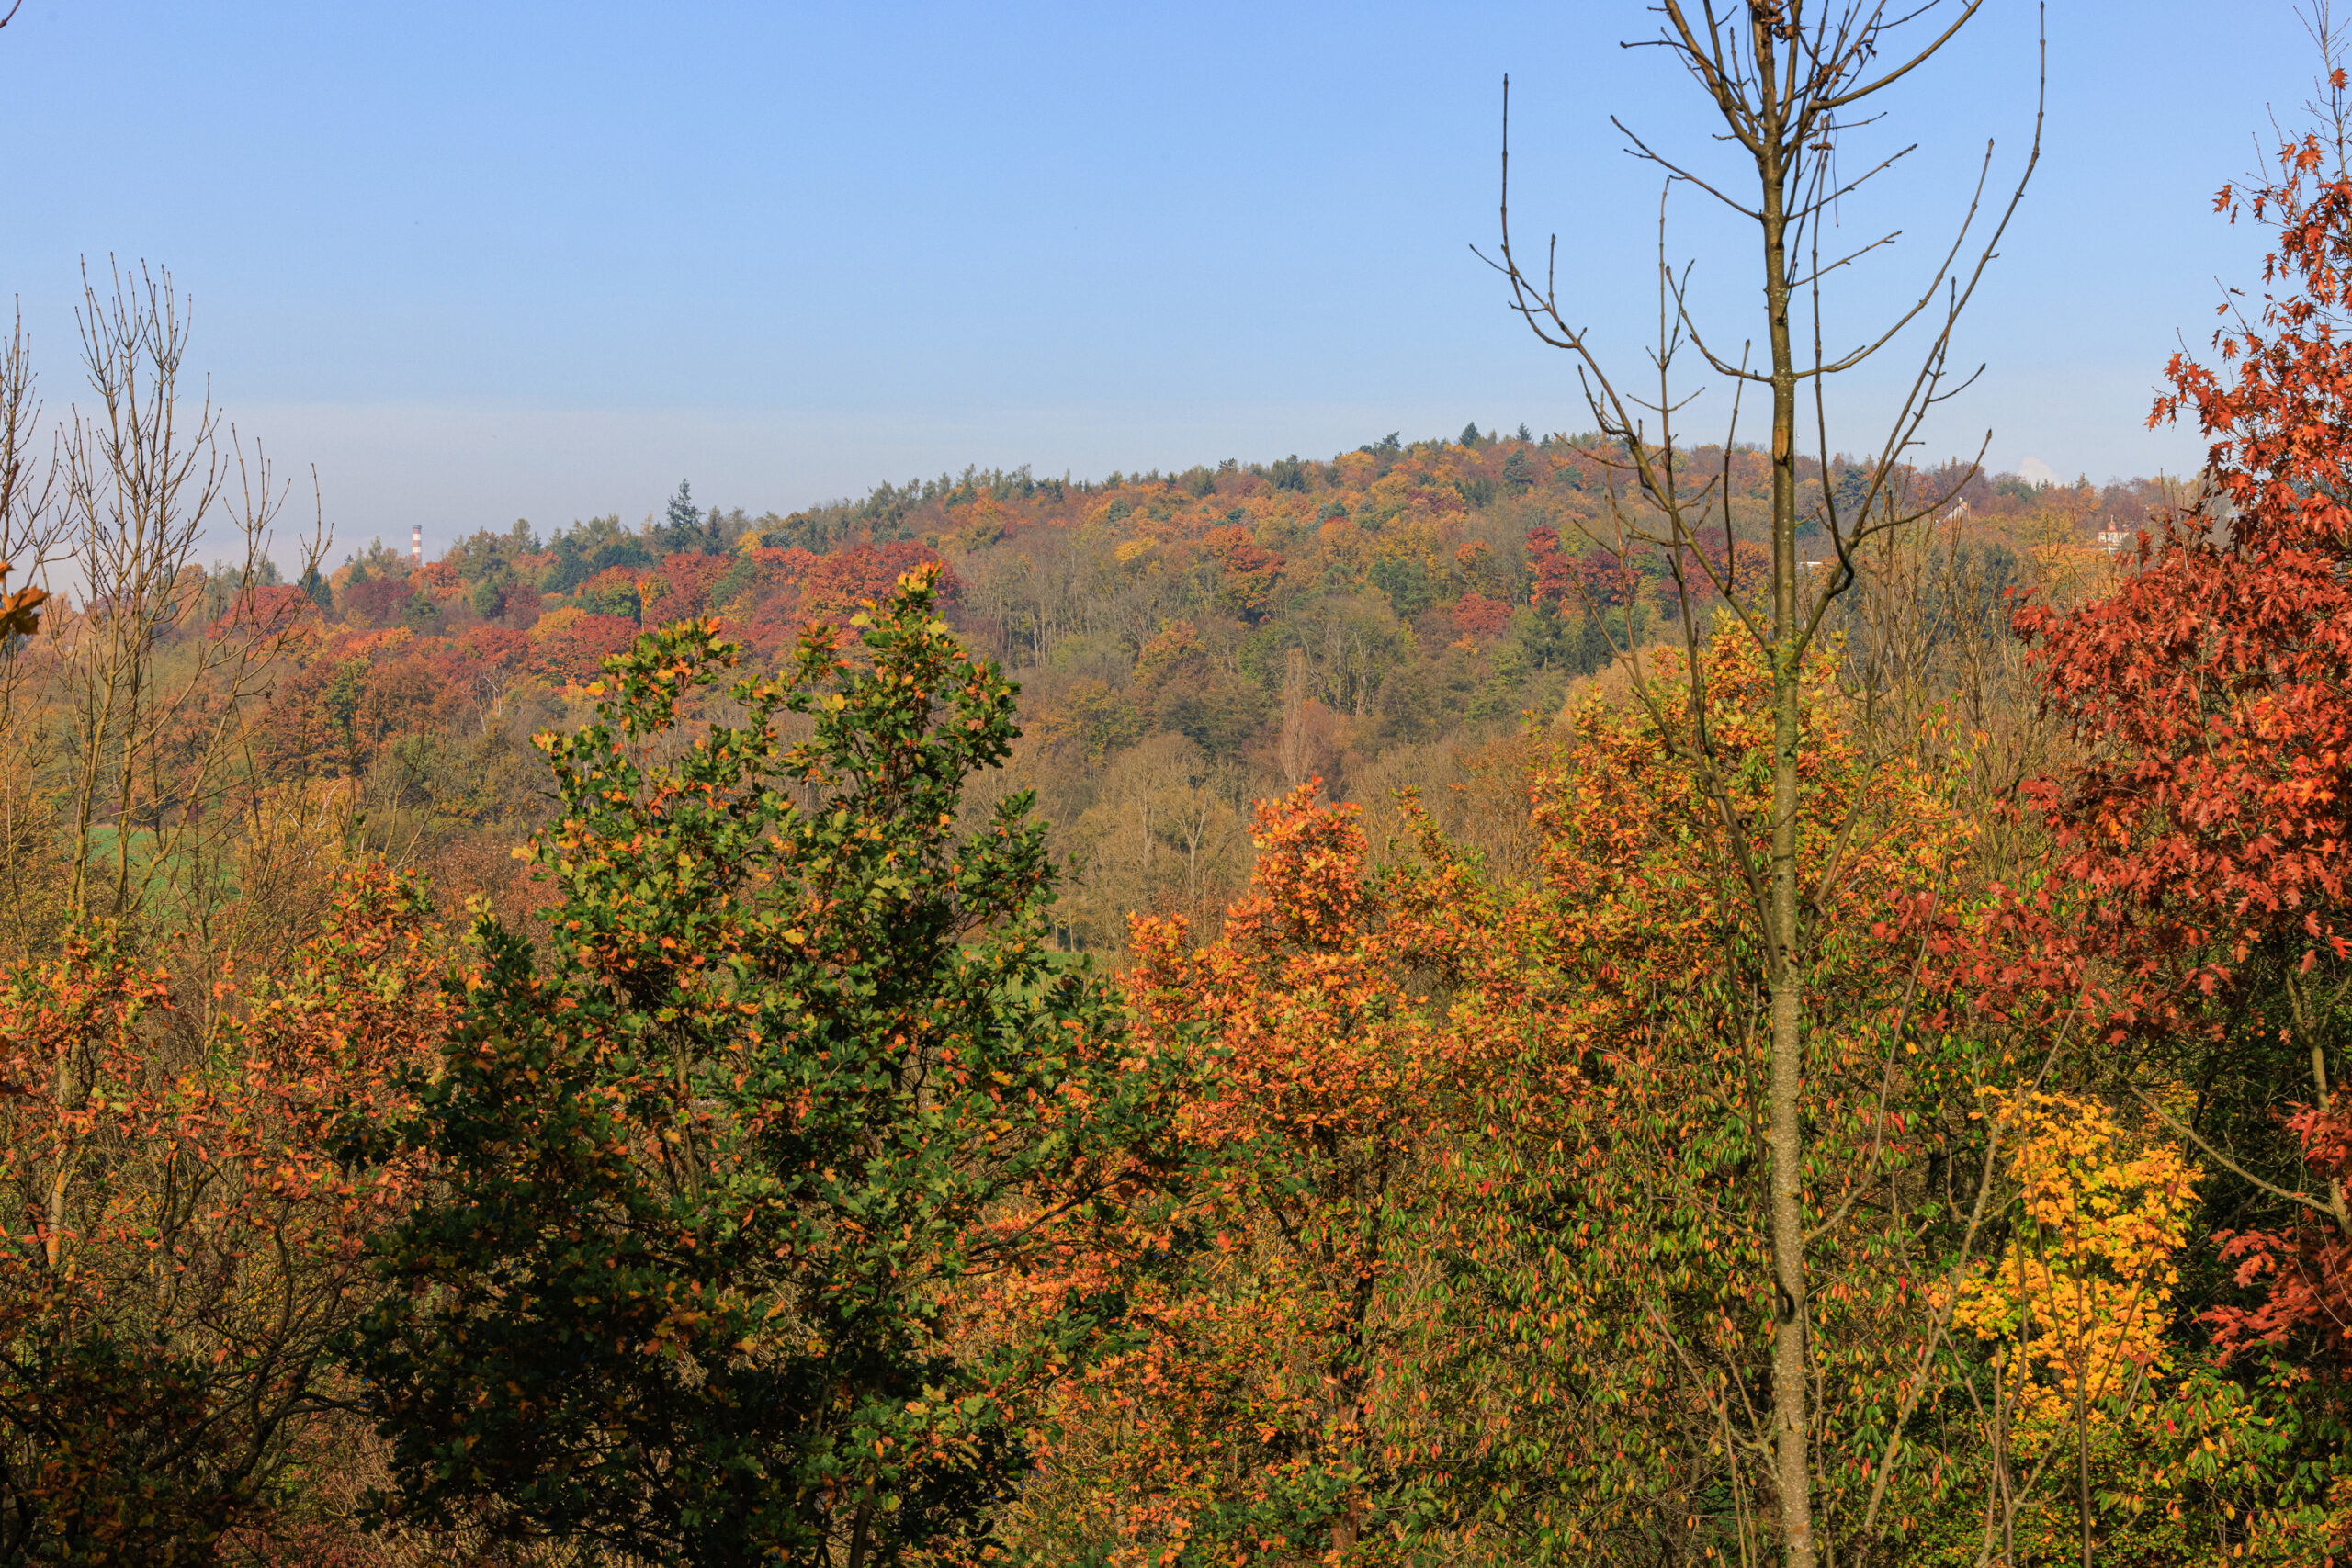 <h1>Hradiště – pohled na vrch Homolka</h1><br />Na pozadí modrého nebe vystupuje vrch Homolka, porostlý listnatými a jehličnatými stromy. Fotografie zachycuje podzimní pohled na lokalitu.